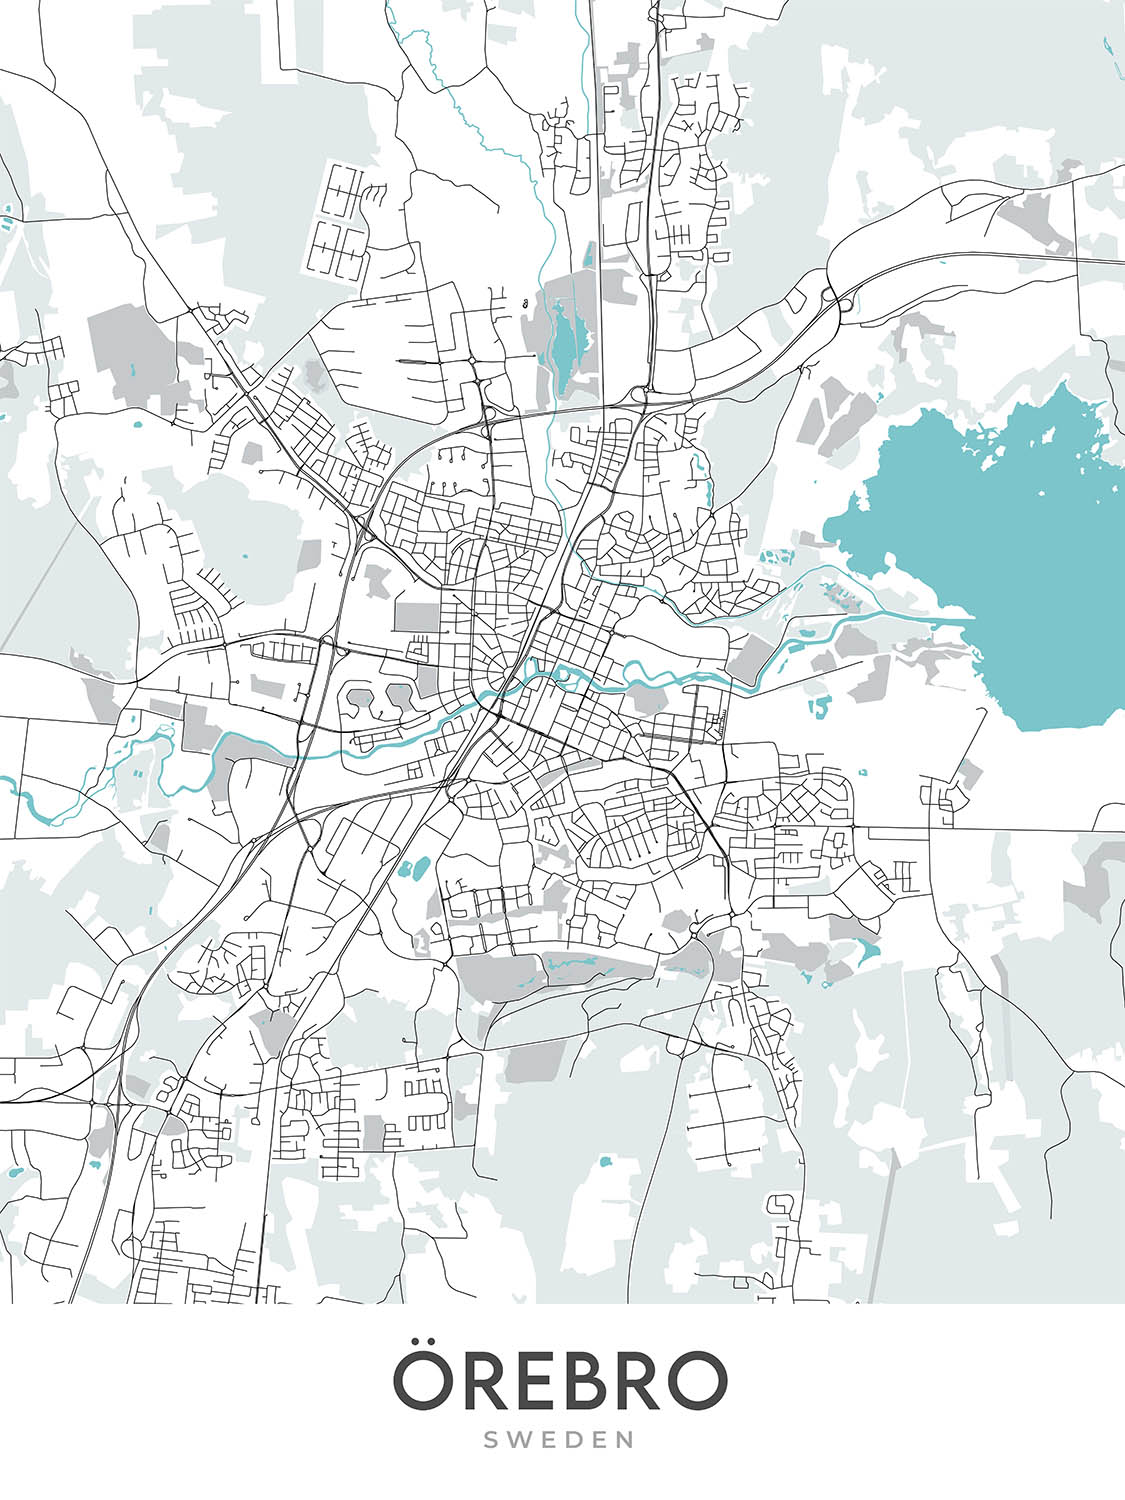 Mapa moderno de la ciudad de Örebro, Suecia: castillo, catedral, universidad, E18, E20